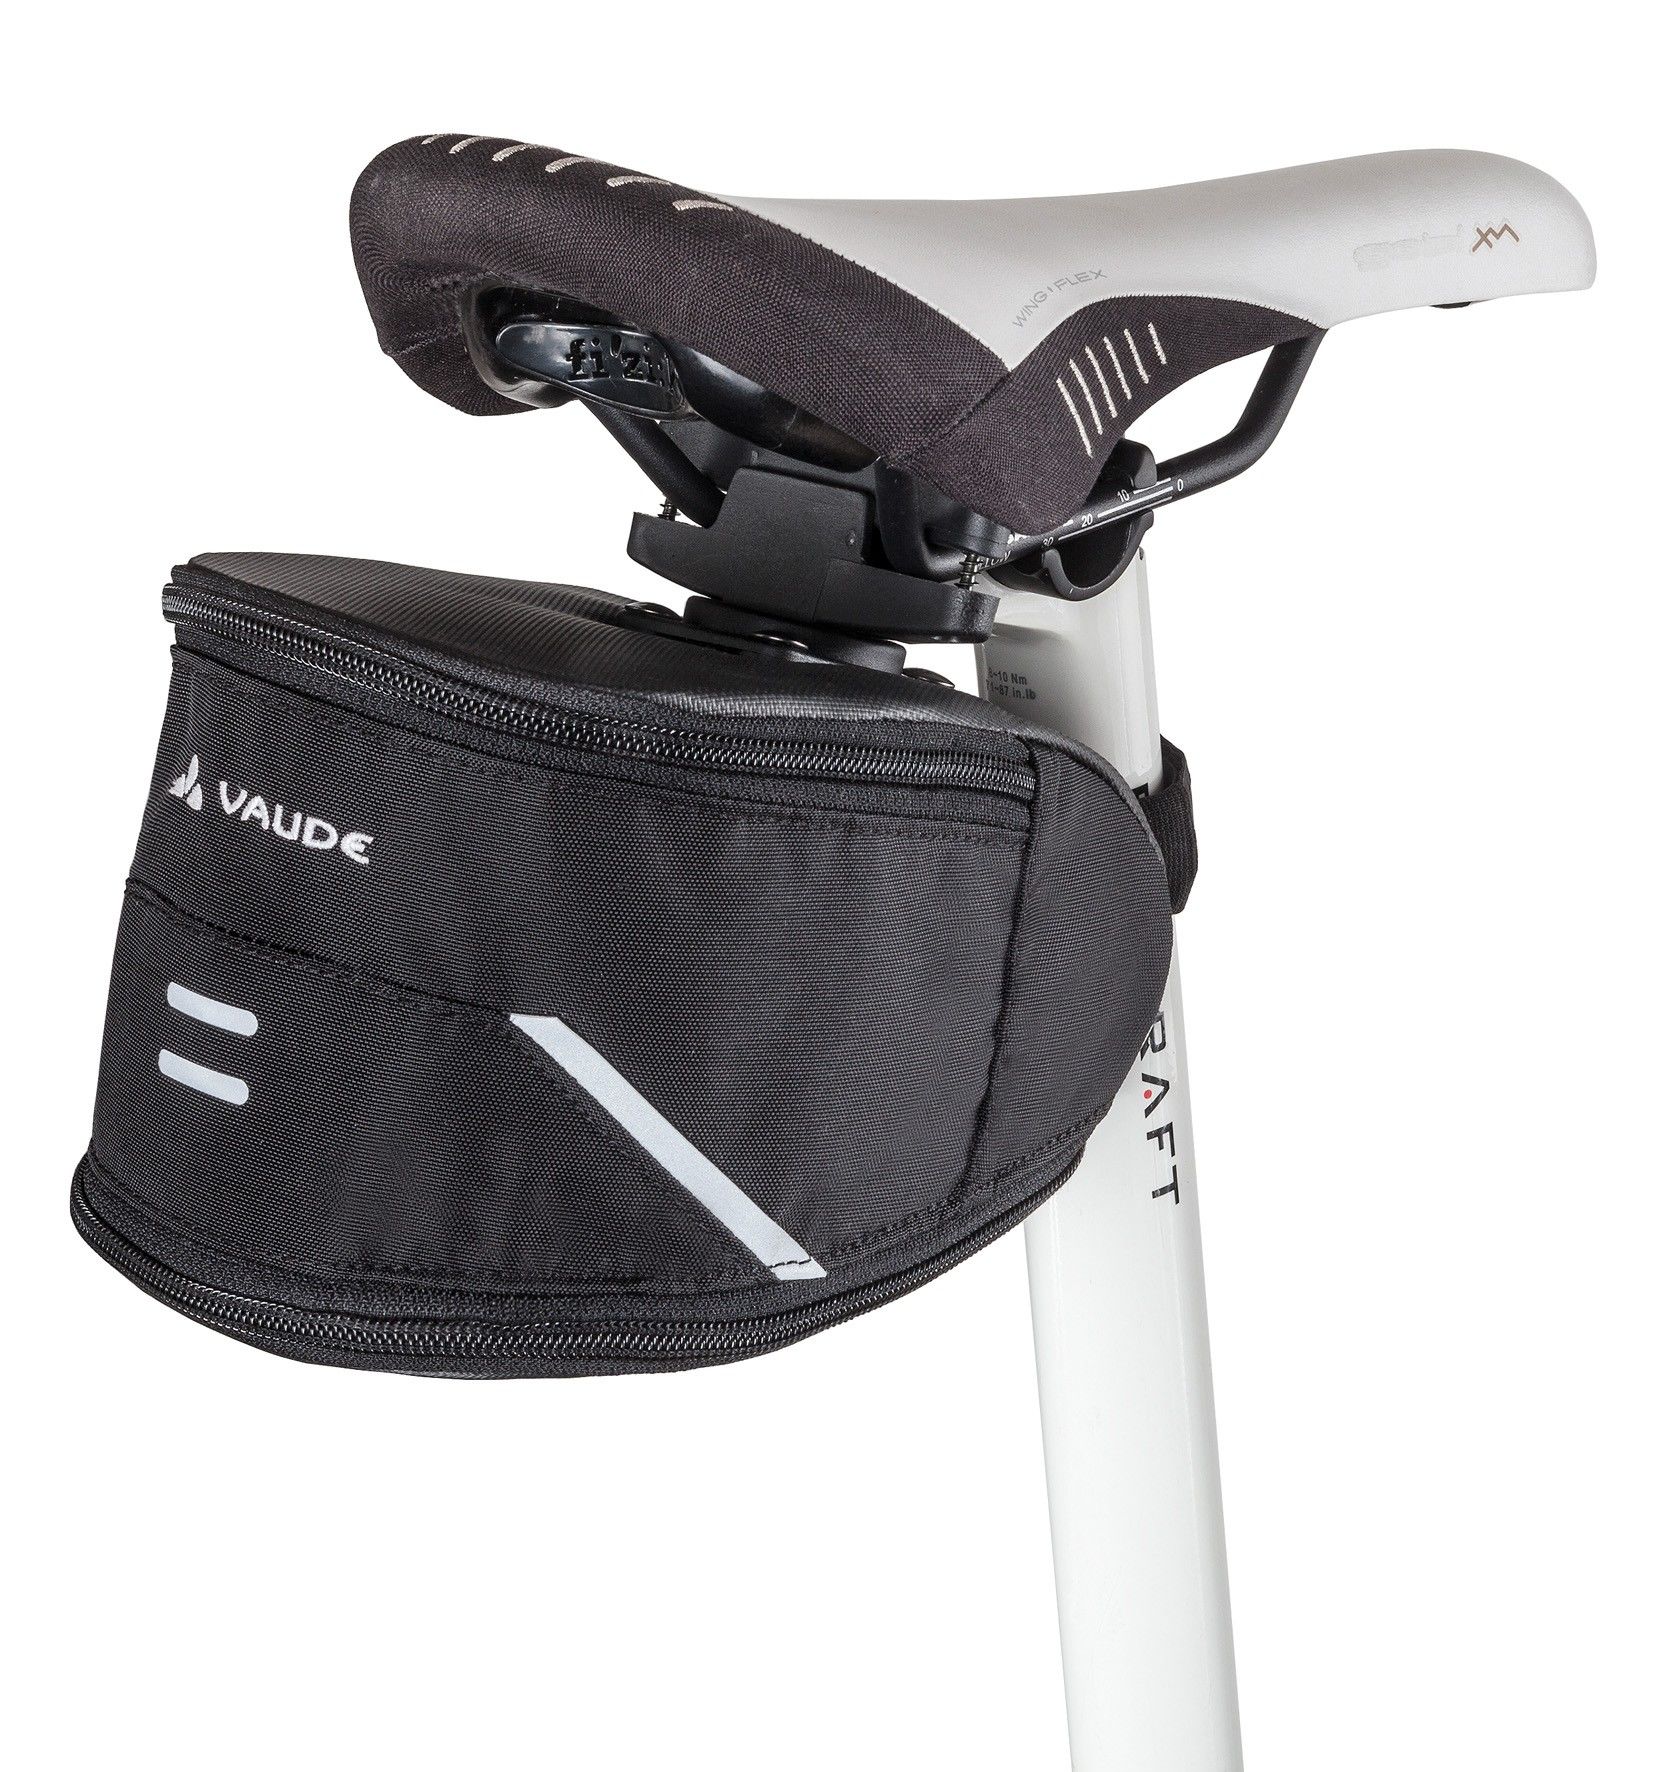 Vaude Tool XL Schwarz- Fahrradtaschen- Grsse One Size - Farbe Black